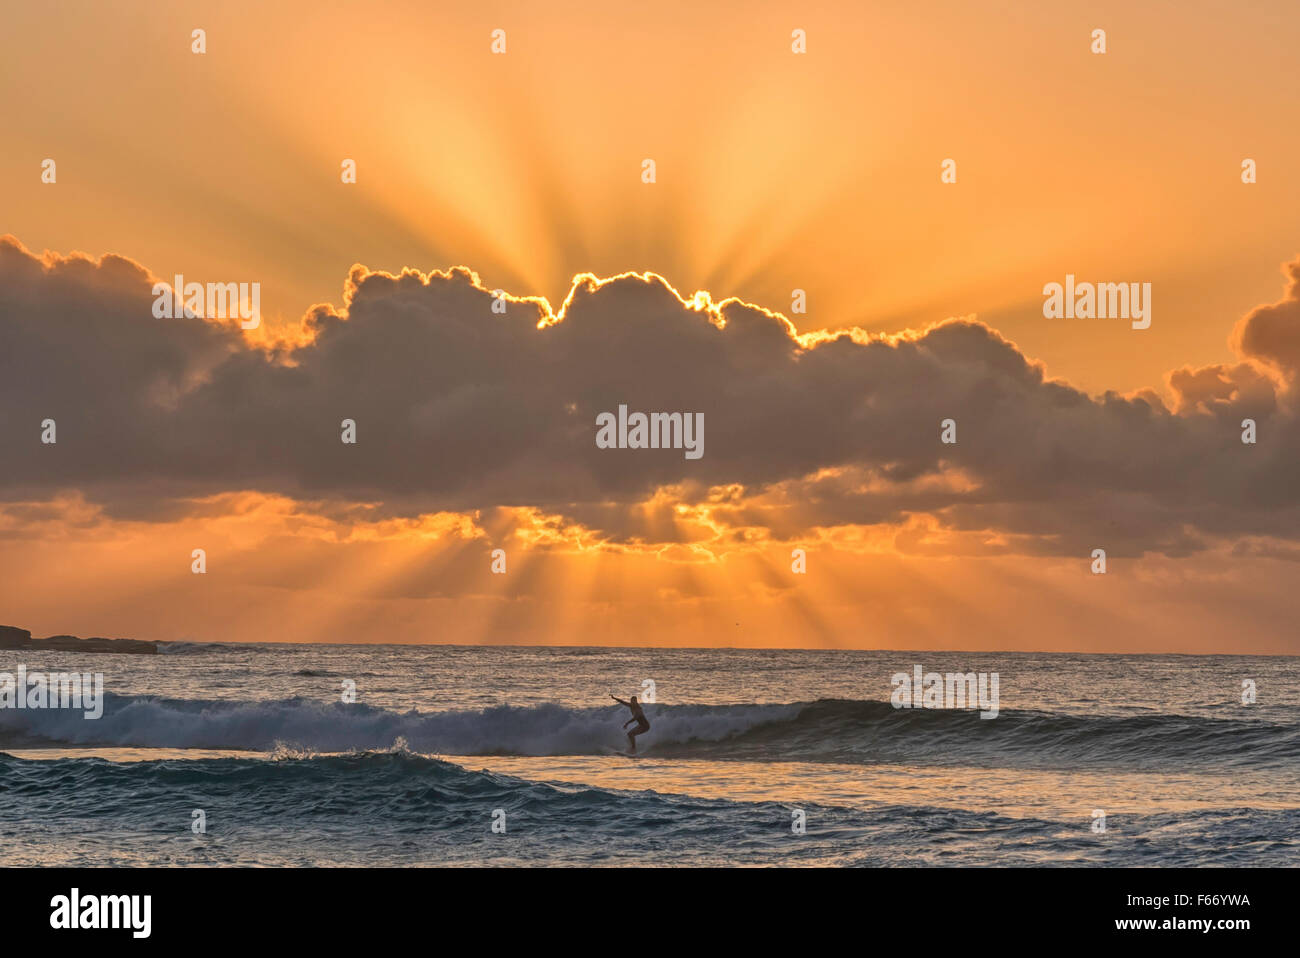 Le surf sur la plage de Bondi Sydney pendant un beau lever de soleil. Banque D'Images